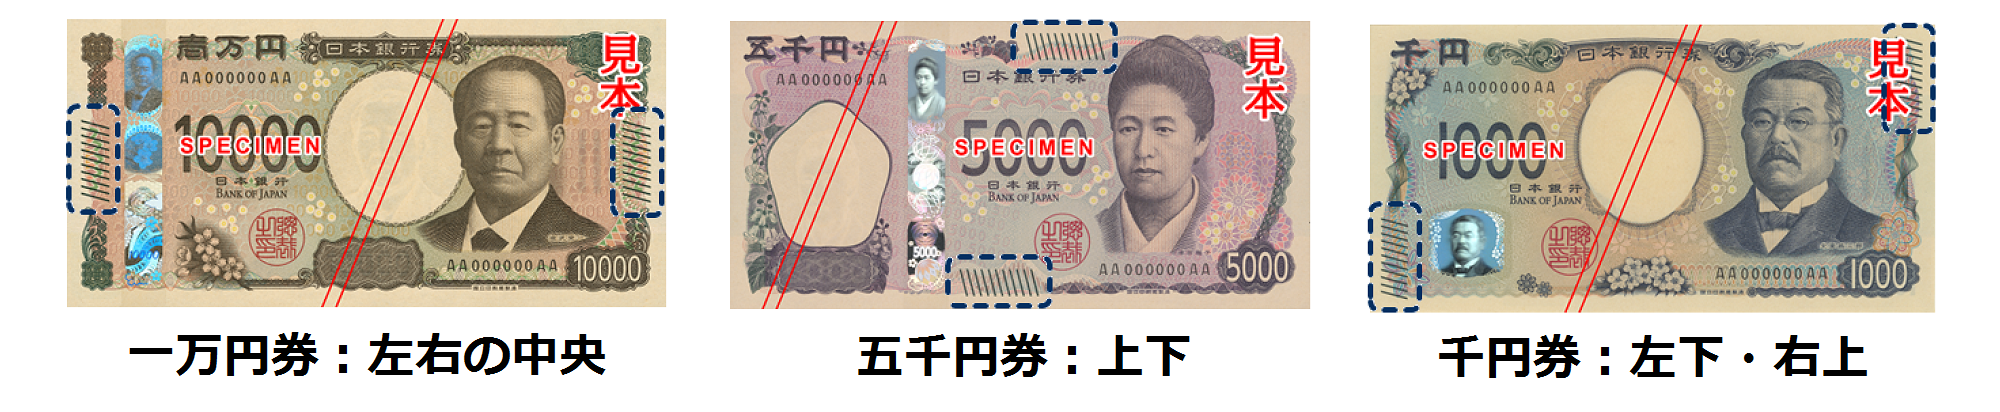 識別マークの位置を比較するために並べられた、各券種の表面の画像。一万円券は左右の中央、五千円券は上下、千円券は左下と右上。